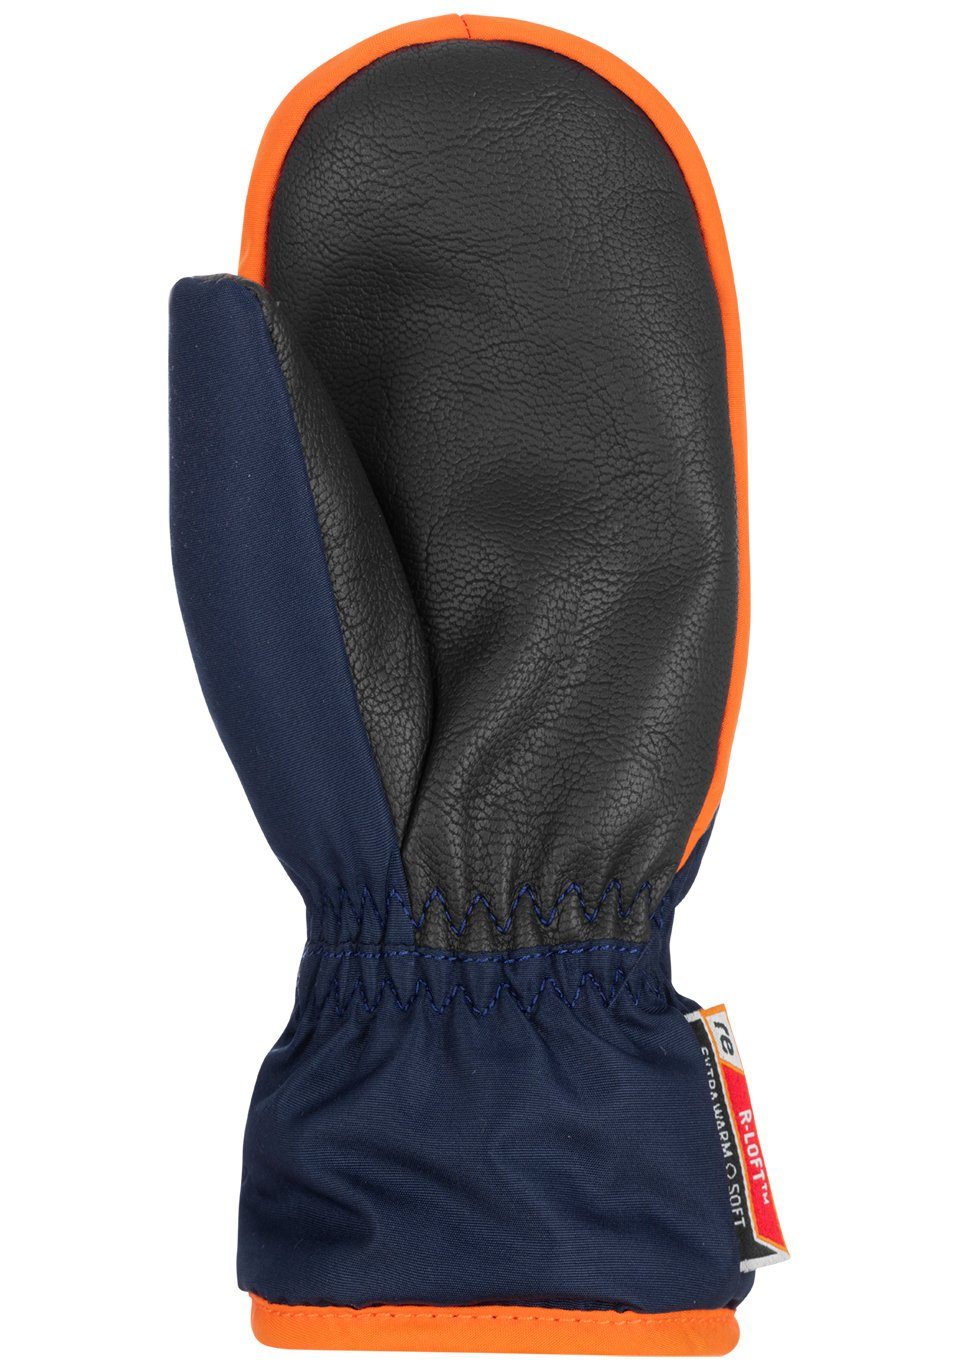 Reusch Fäustlinge Ben Mitten mit Reißverschluss orange-blau praktischem